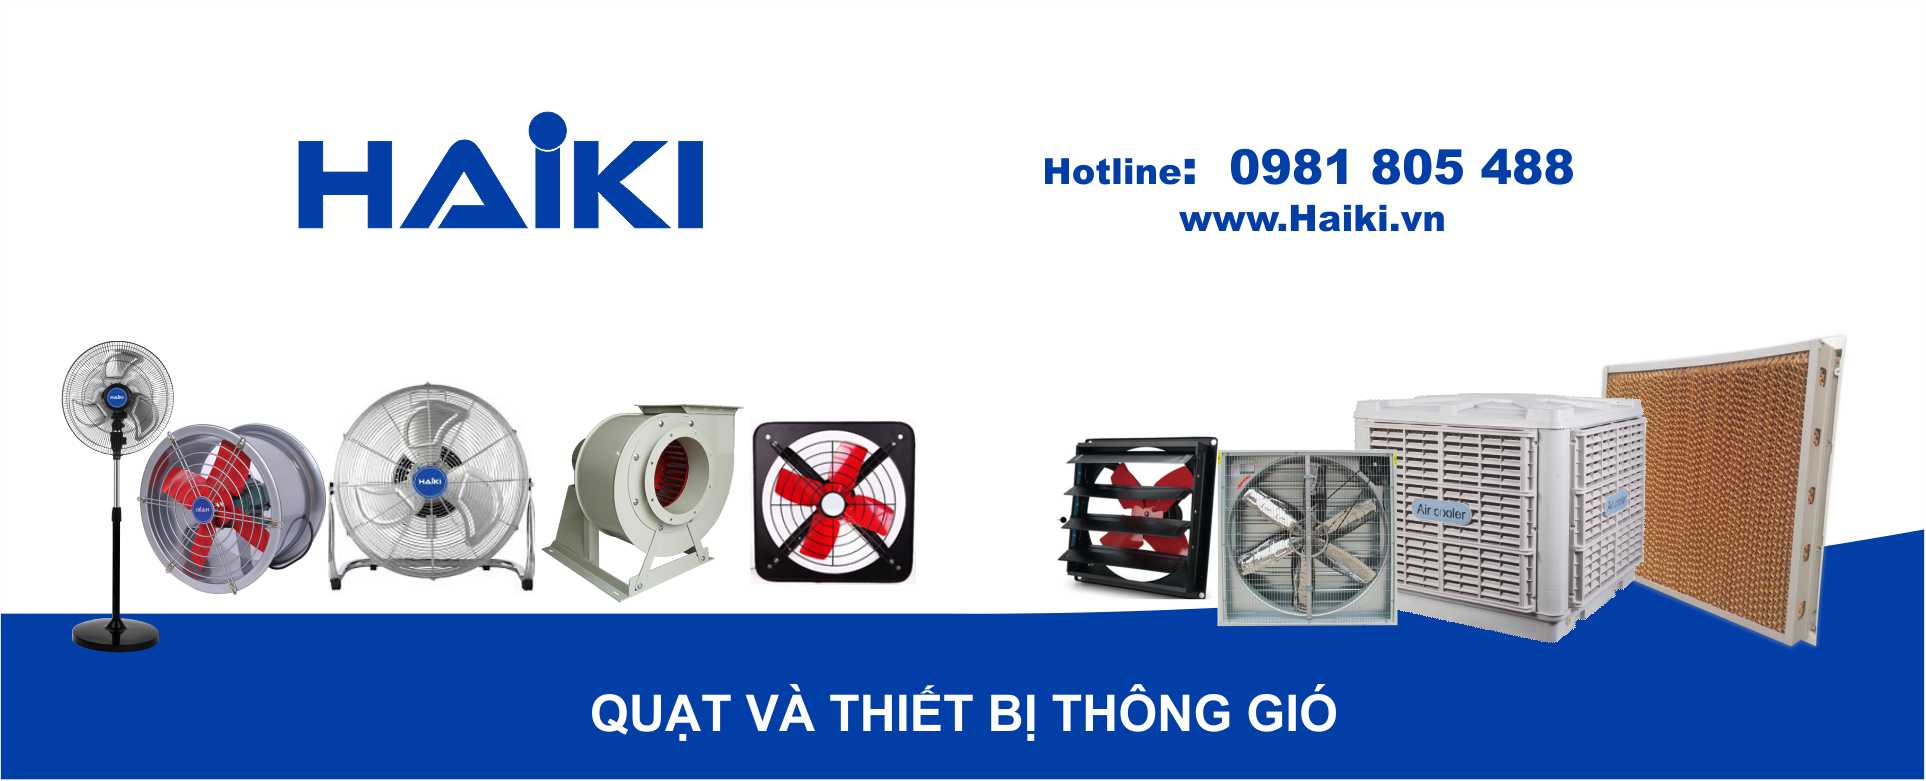 Quạt công nghiệp tại Quảng Ninh - Hotline 0981 805 488